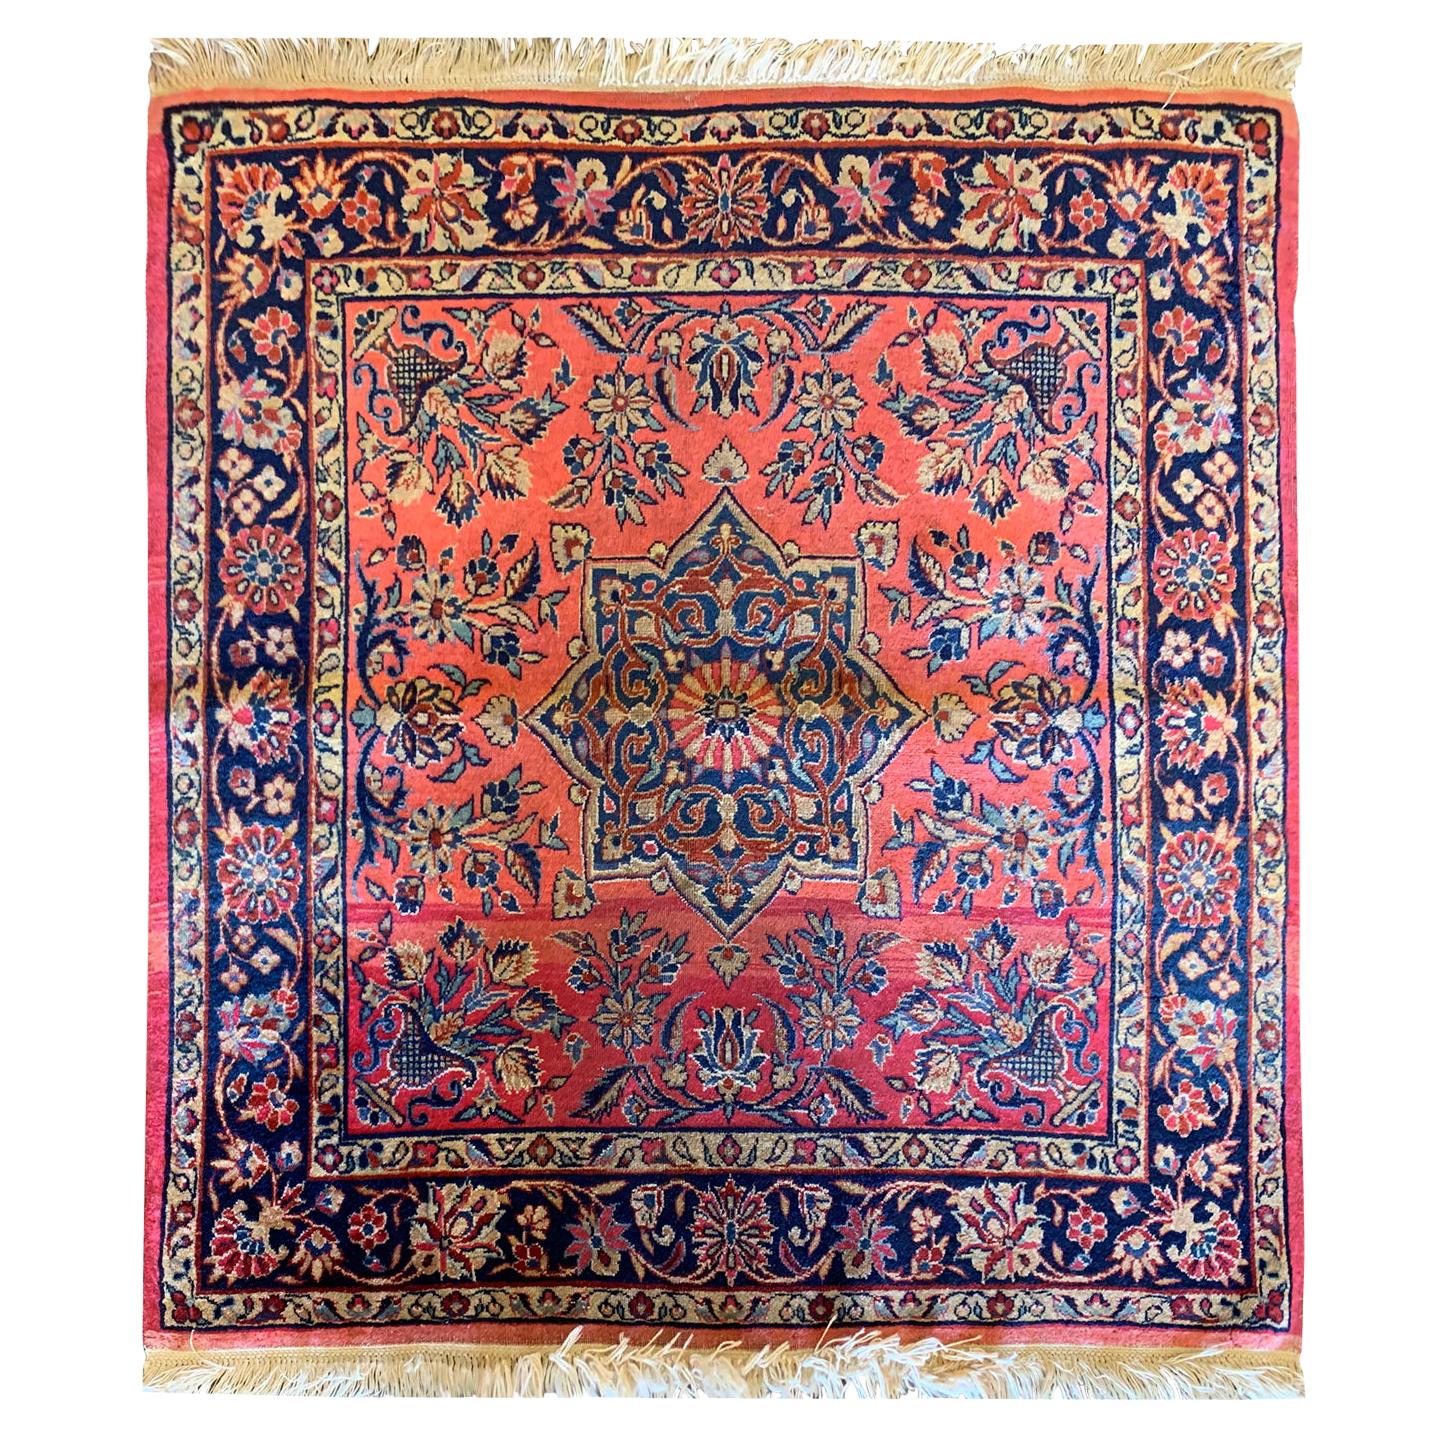 Handgewebter antiker Teppich aus rostfarbener Wolle, quadratischer Teppich, Sammlerstück